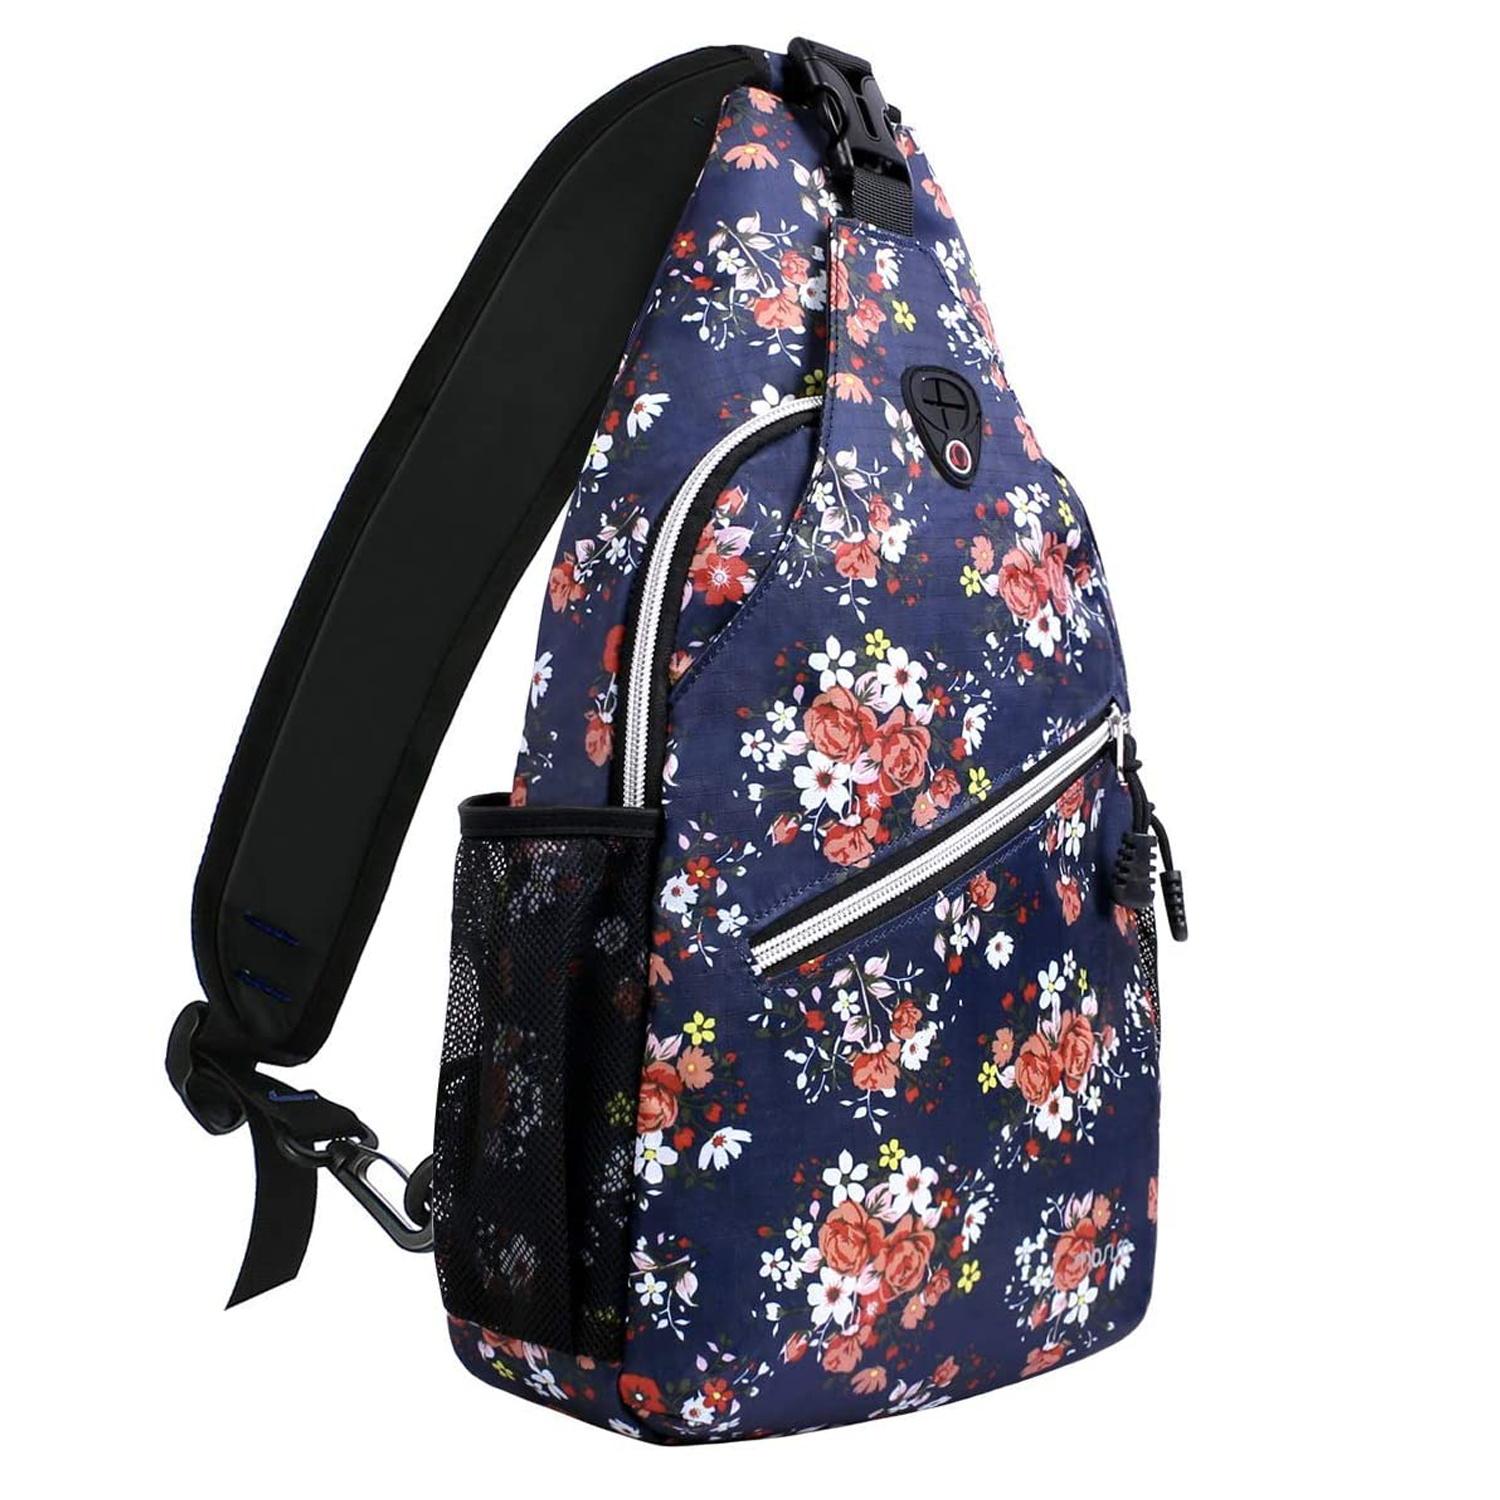 Mosiso Polyester Sling Bag Backpack Travel Hiking Outdoor Sport Crossbody Shoulder Bag Multipurpose Daypack for Women Men, Navy Blue Base Floral - image 1 of 6